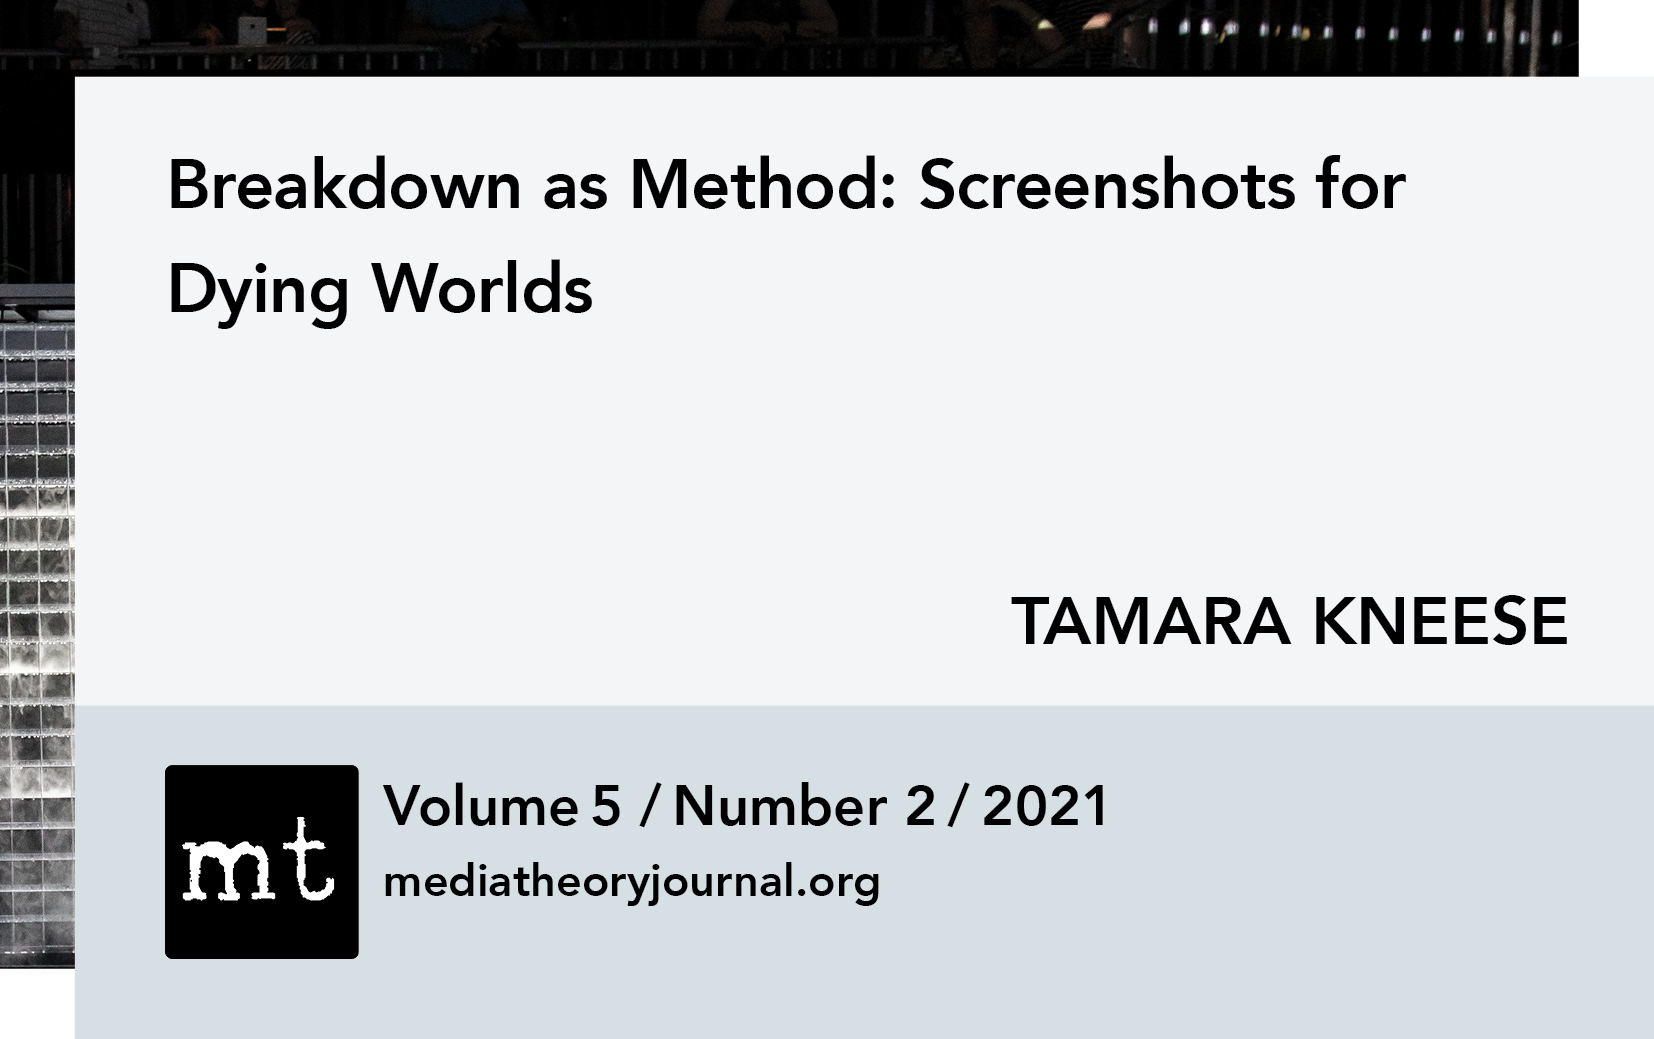 Tamara Kneese: Breakdown as Method